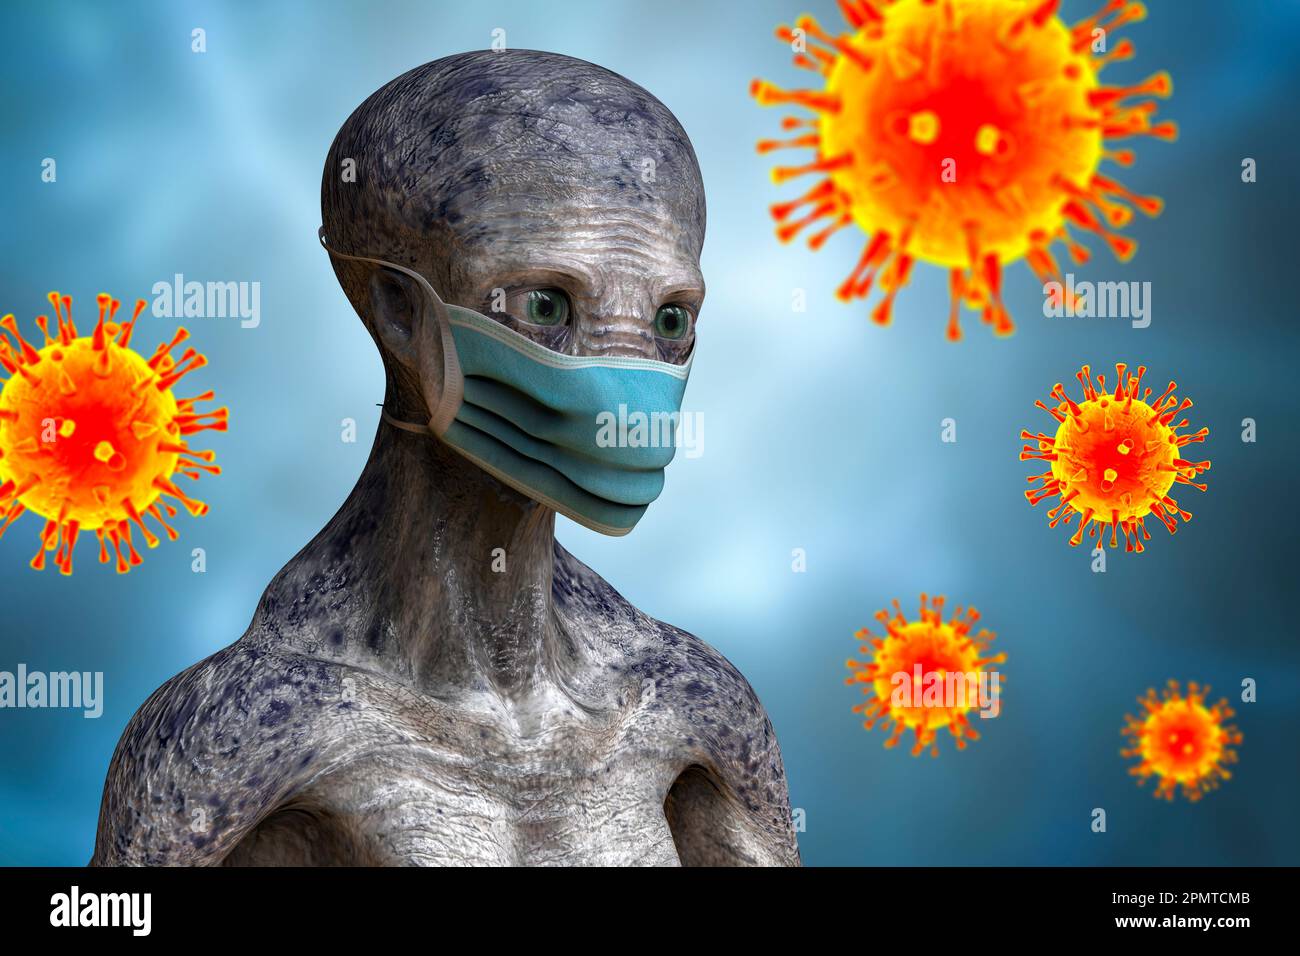 Alieno nella maschera facciale, illustrazione concettuale Foto Stock